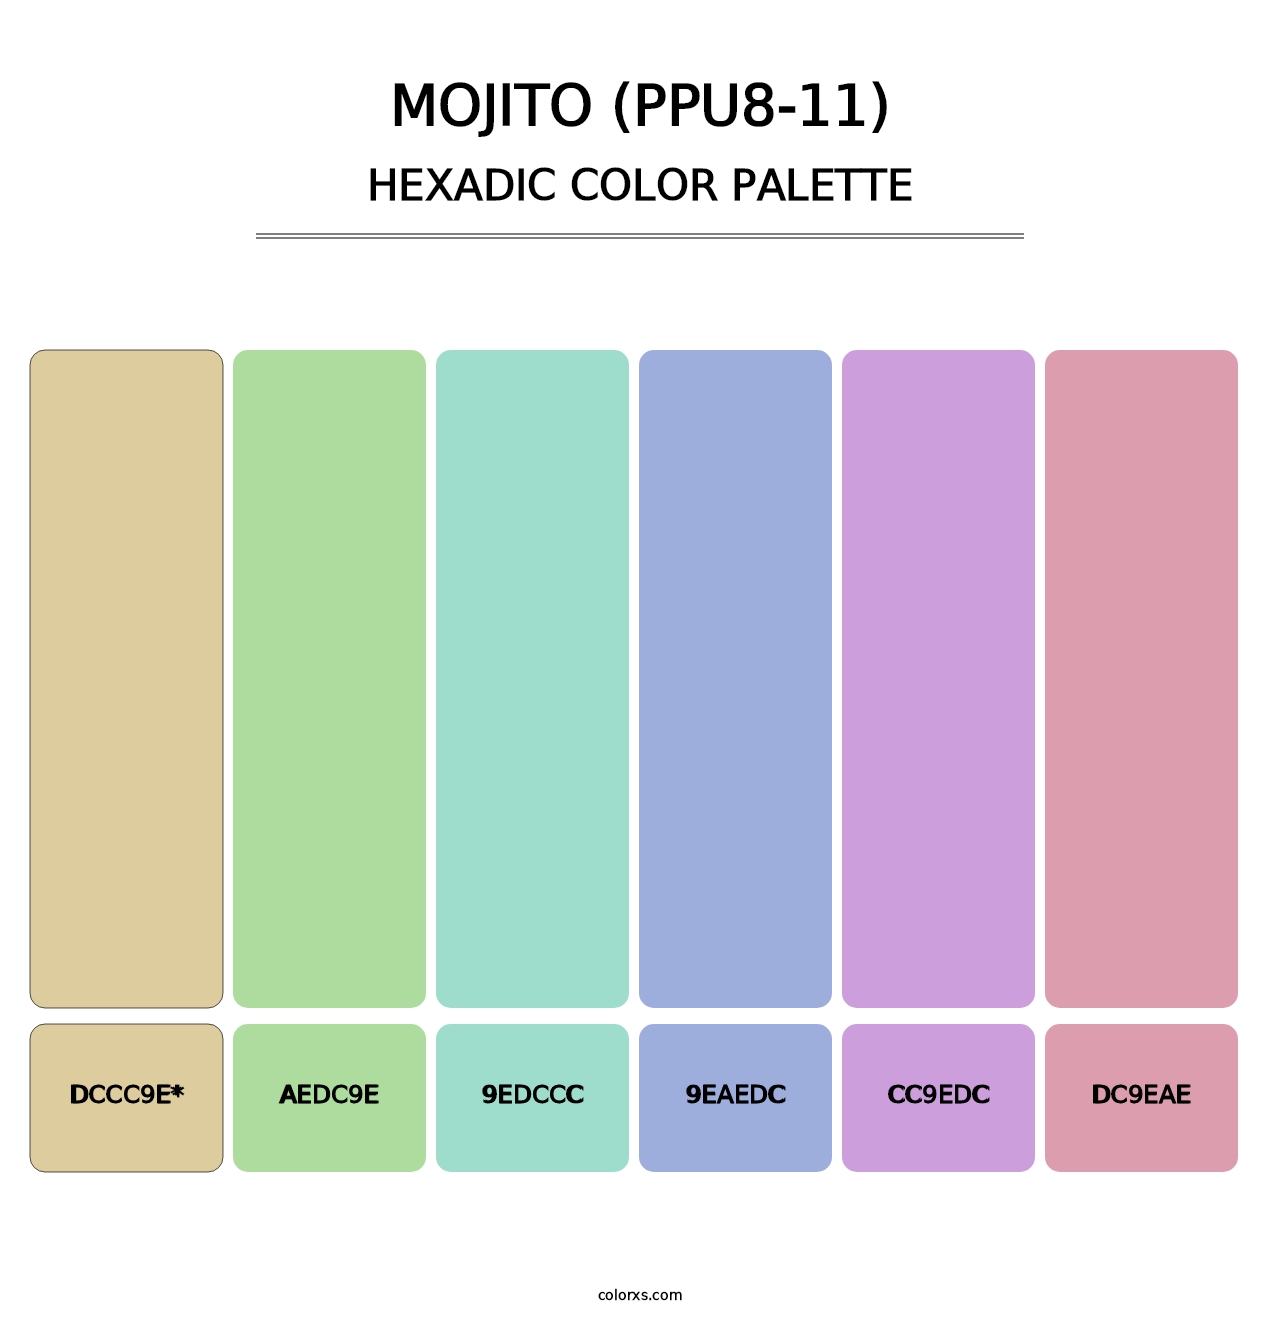 Mojito (PPU8-11) - Hexadic Color Palette